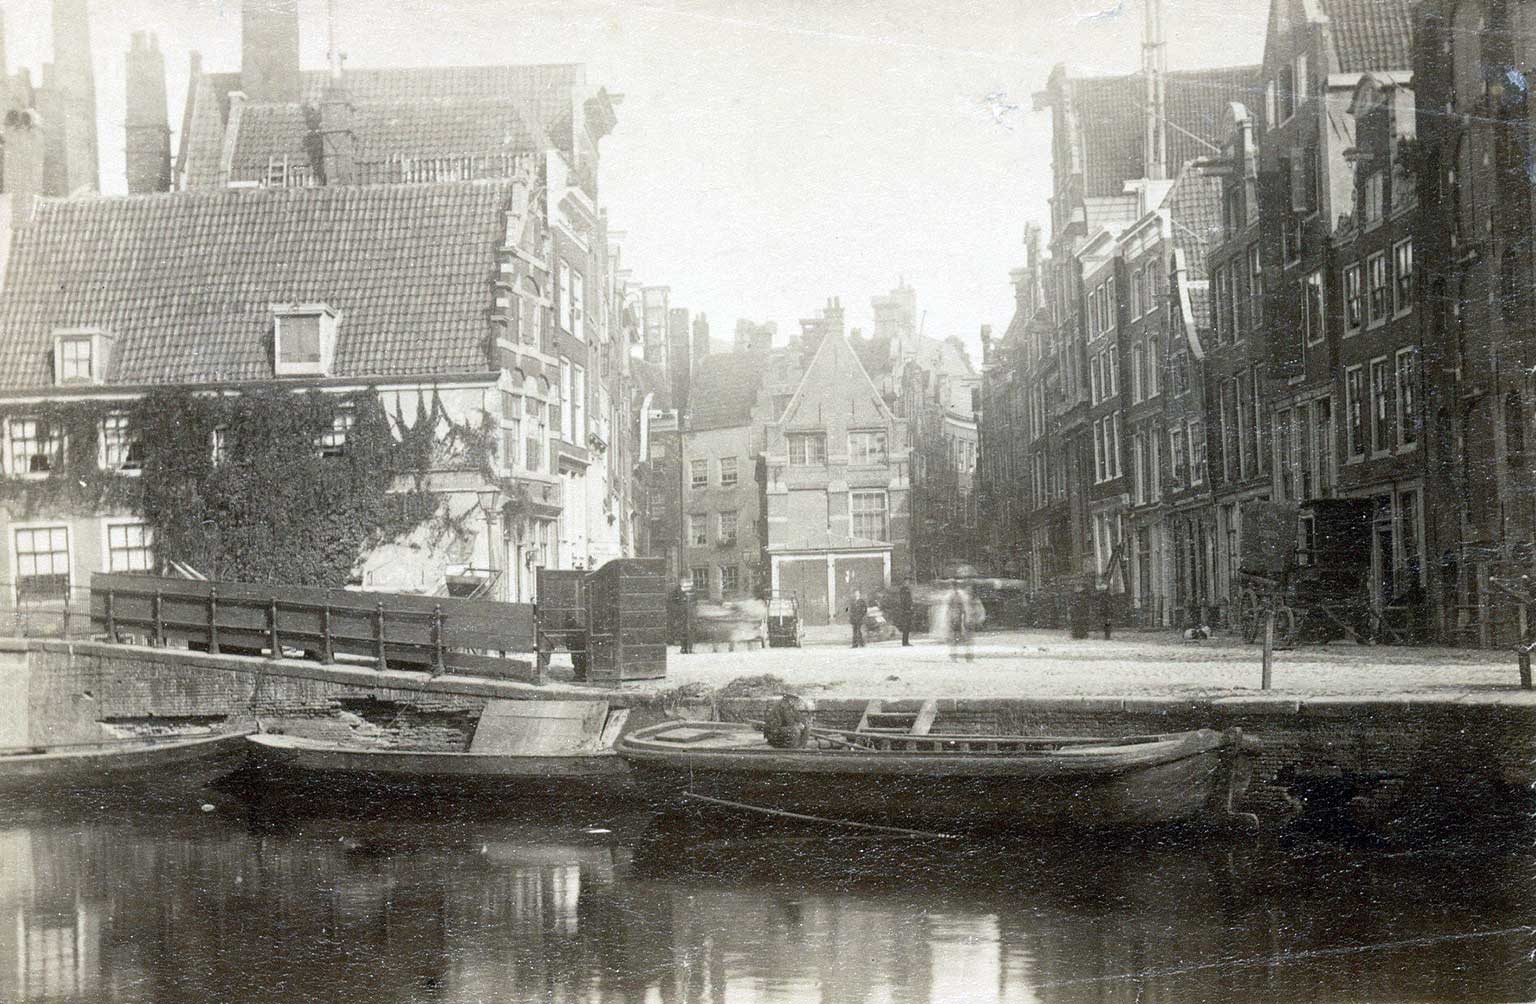 Nieuwezijds Kolk, Amsterdam, around 1880